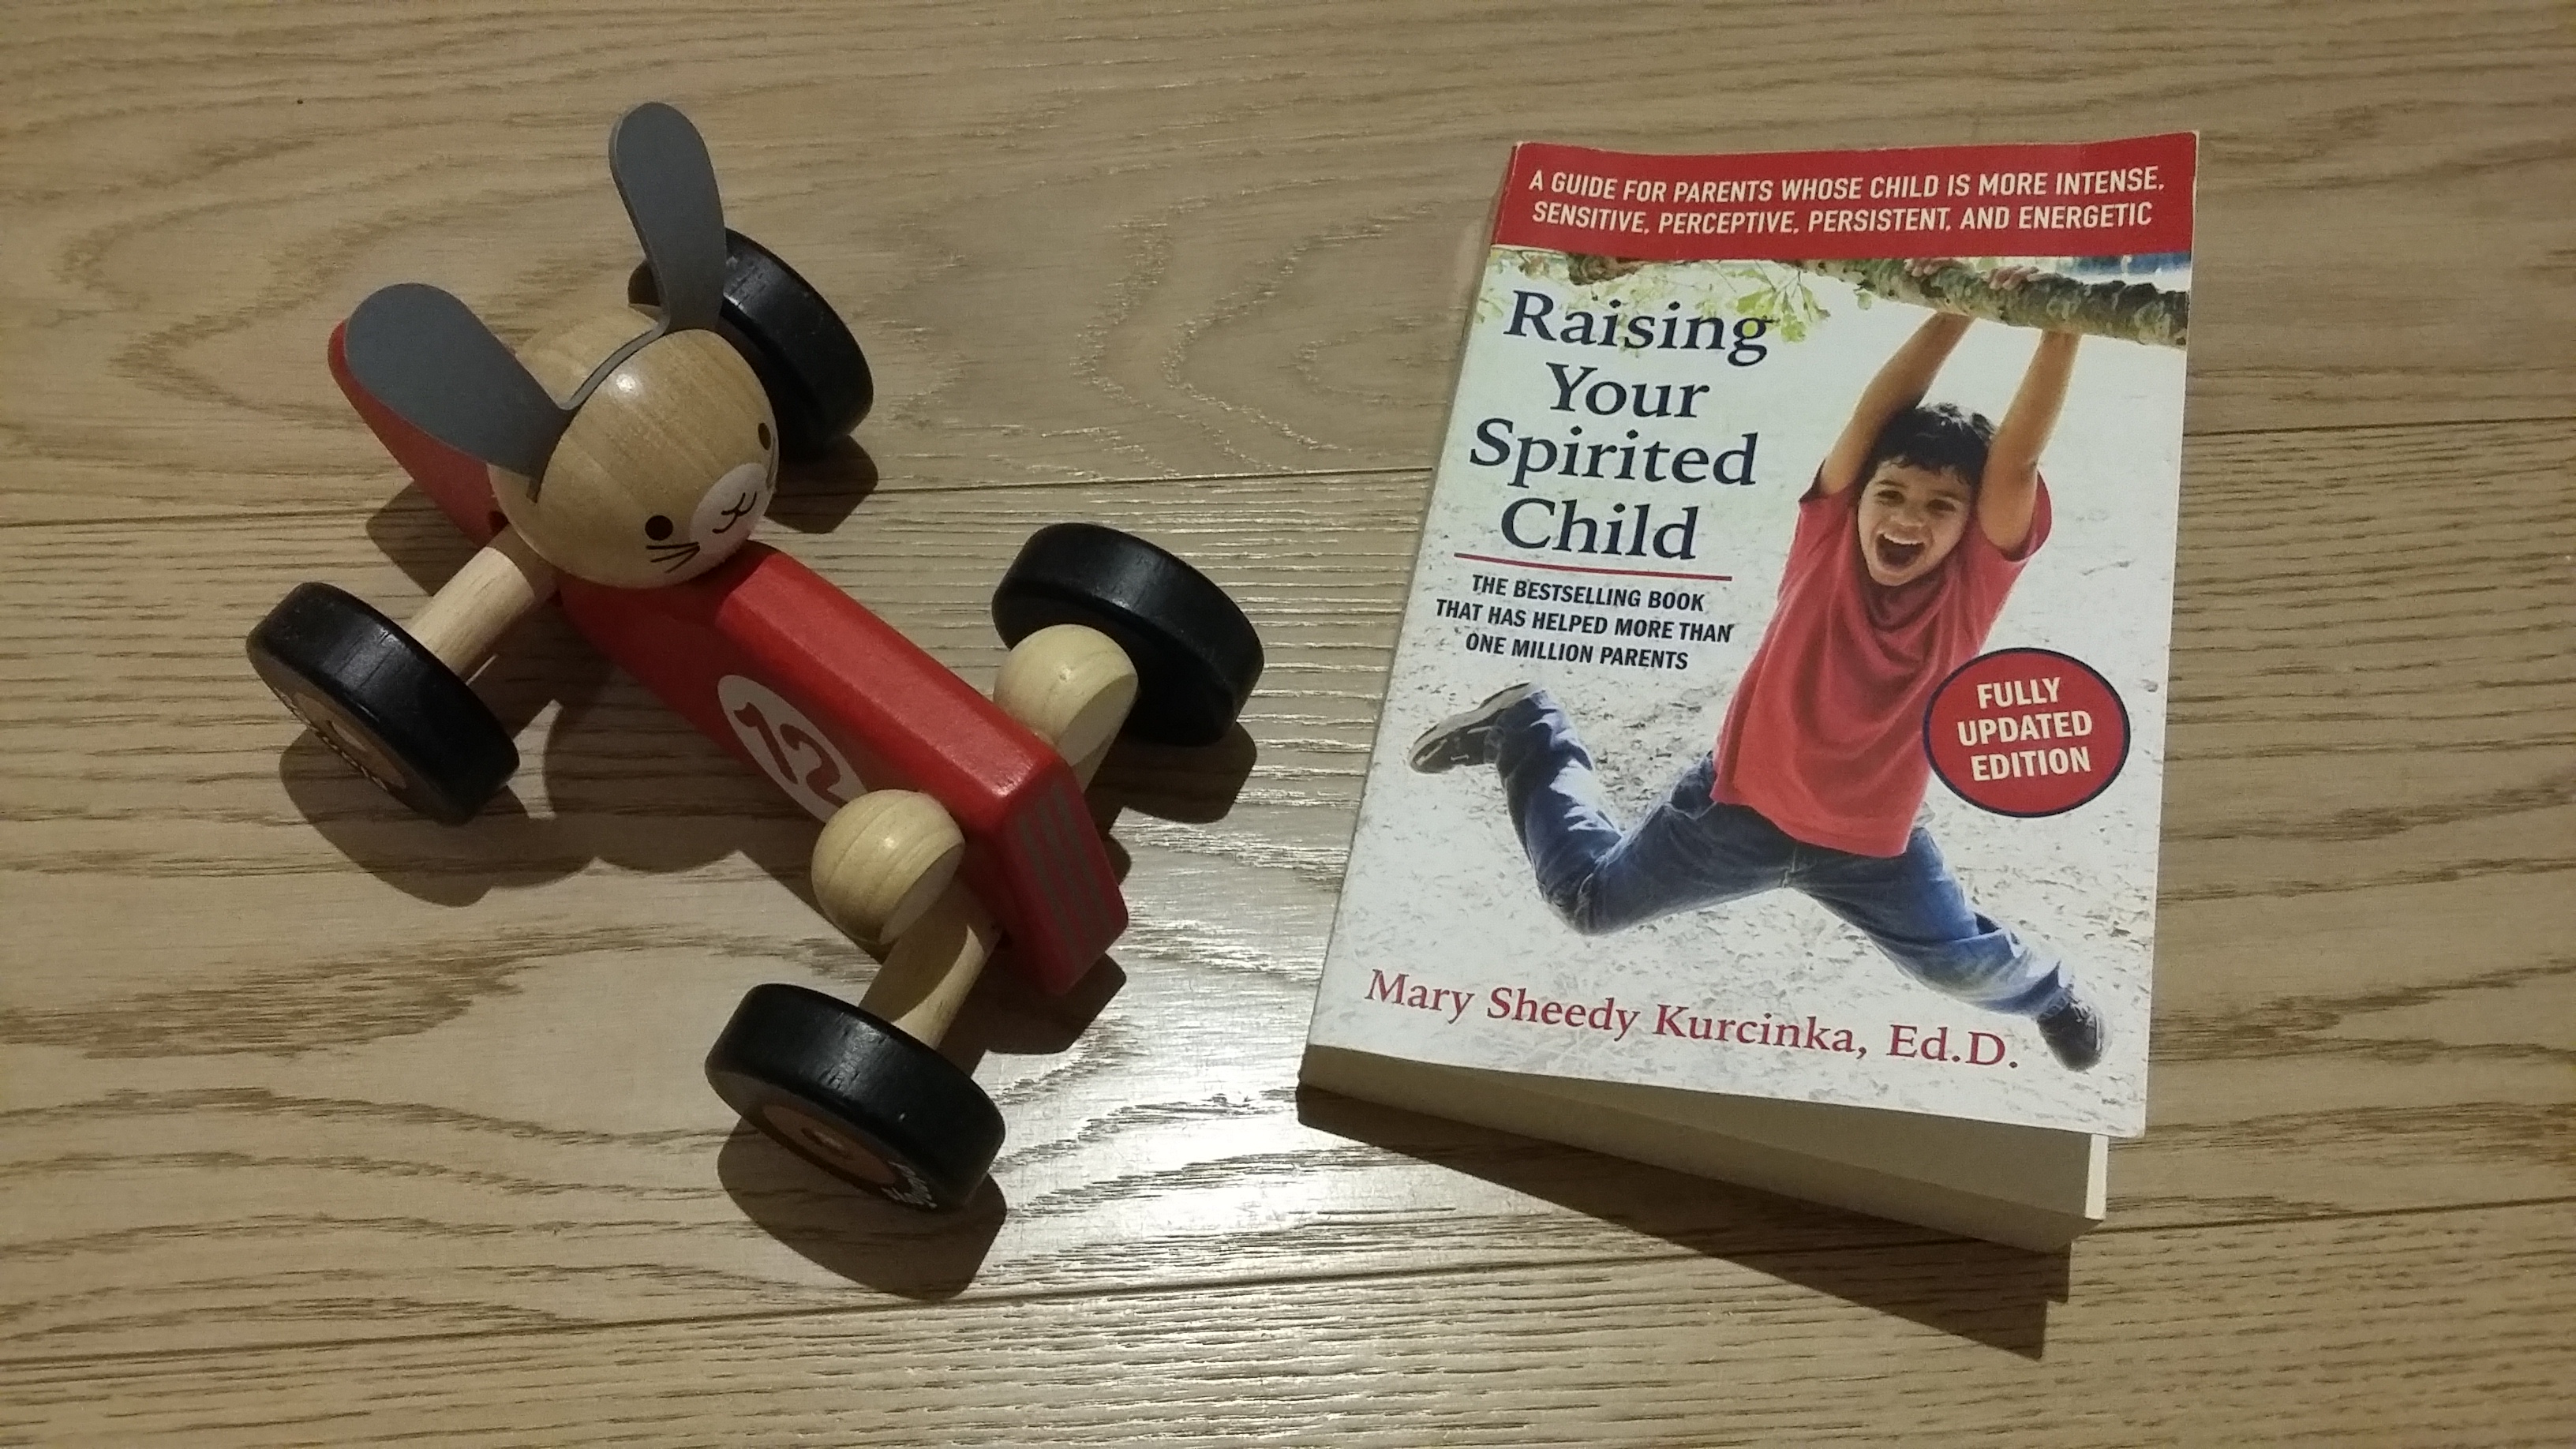 Raising your spirited child